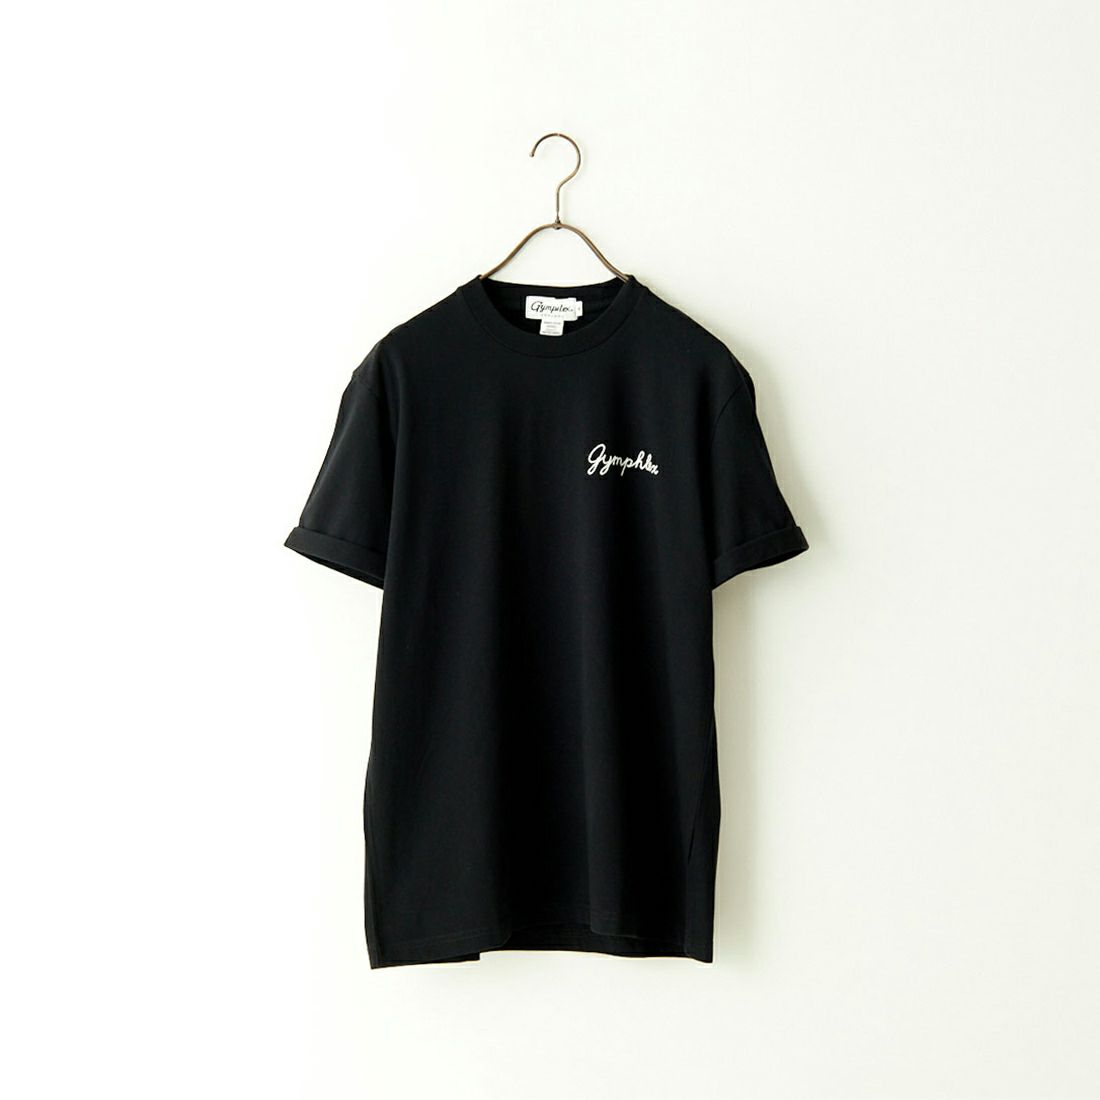 Gymphlex [ジムフレックス] ロールアップスリーブ ロゴ刺繍Tシャツ [J-1155CH] BLACK